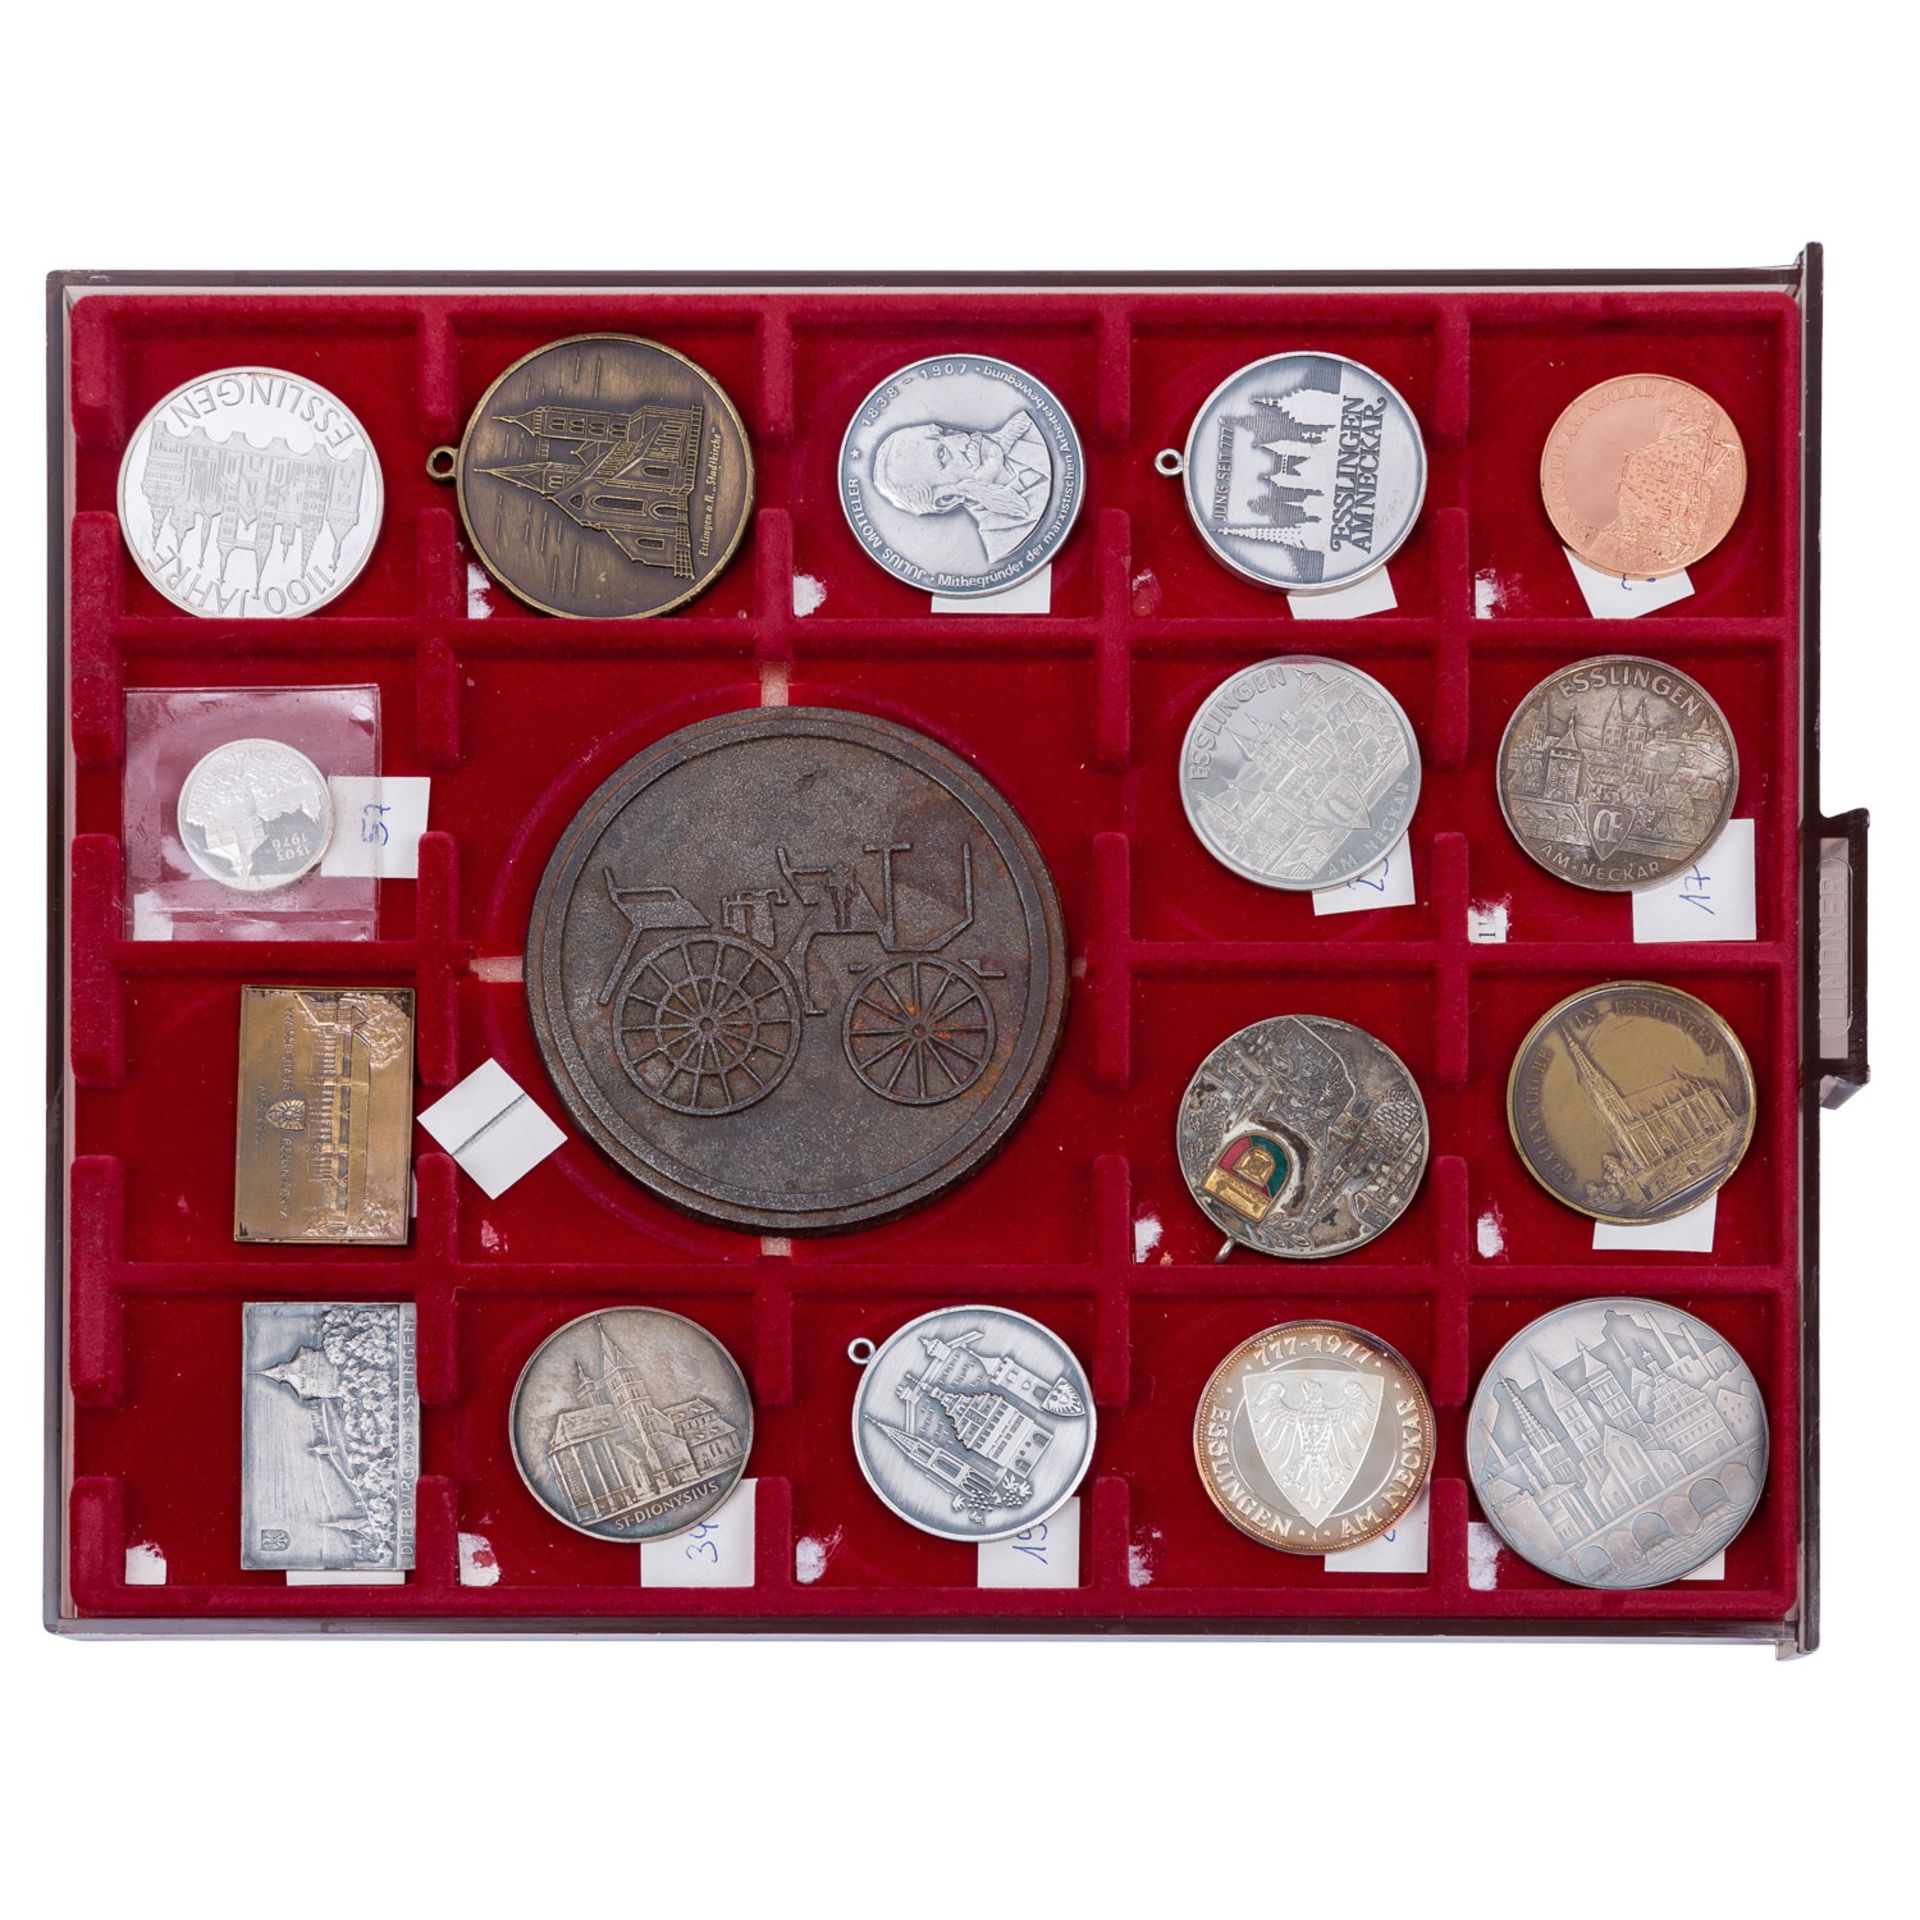 Esslingen - Spannende Großsammlung von Münzen, Medaillen, Plaketten und weiteres über die Stadtgesch - Image 4 of 7